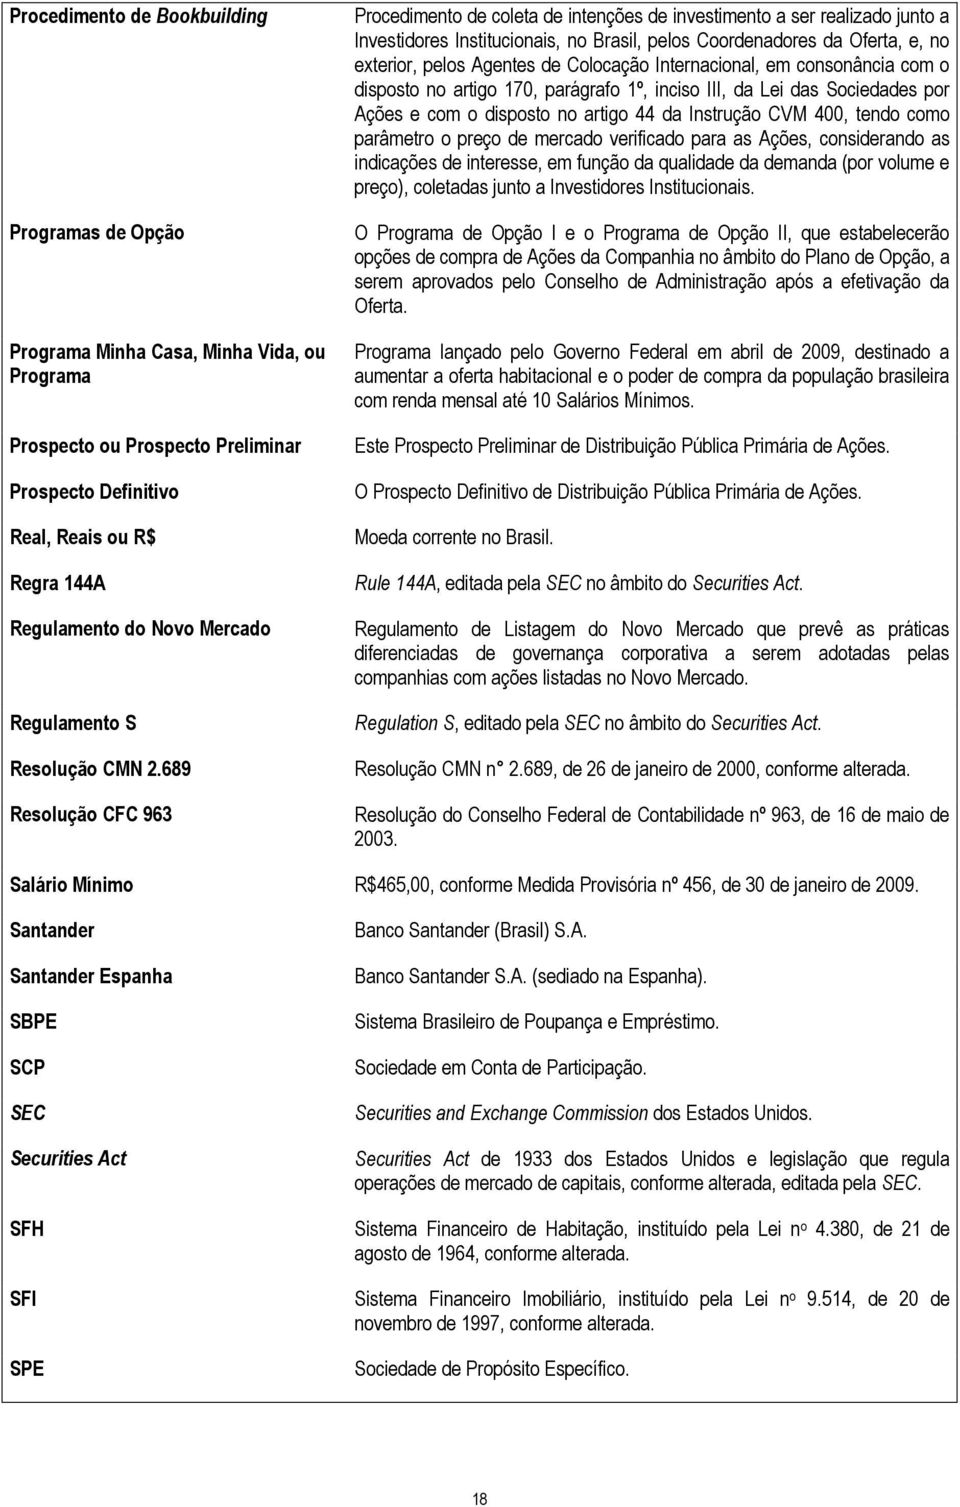 689 Resolução CFC 963 Procedimento de coleta de intenções de investimento a ser realizado junto a Investidores Institucionais, no Brasil, pelos Coordenadores da Oferta, e, no exterior, pelos Agentes